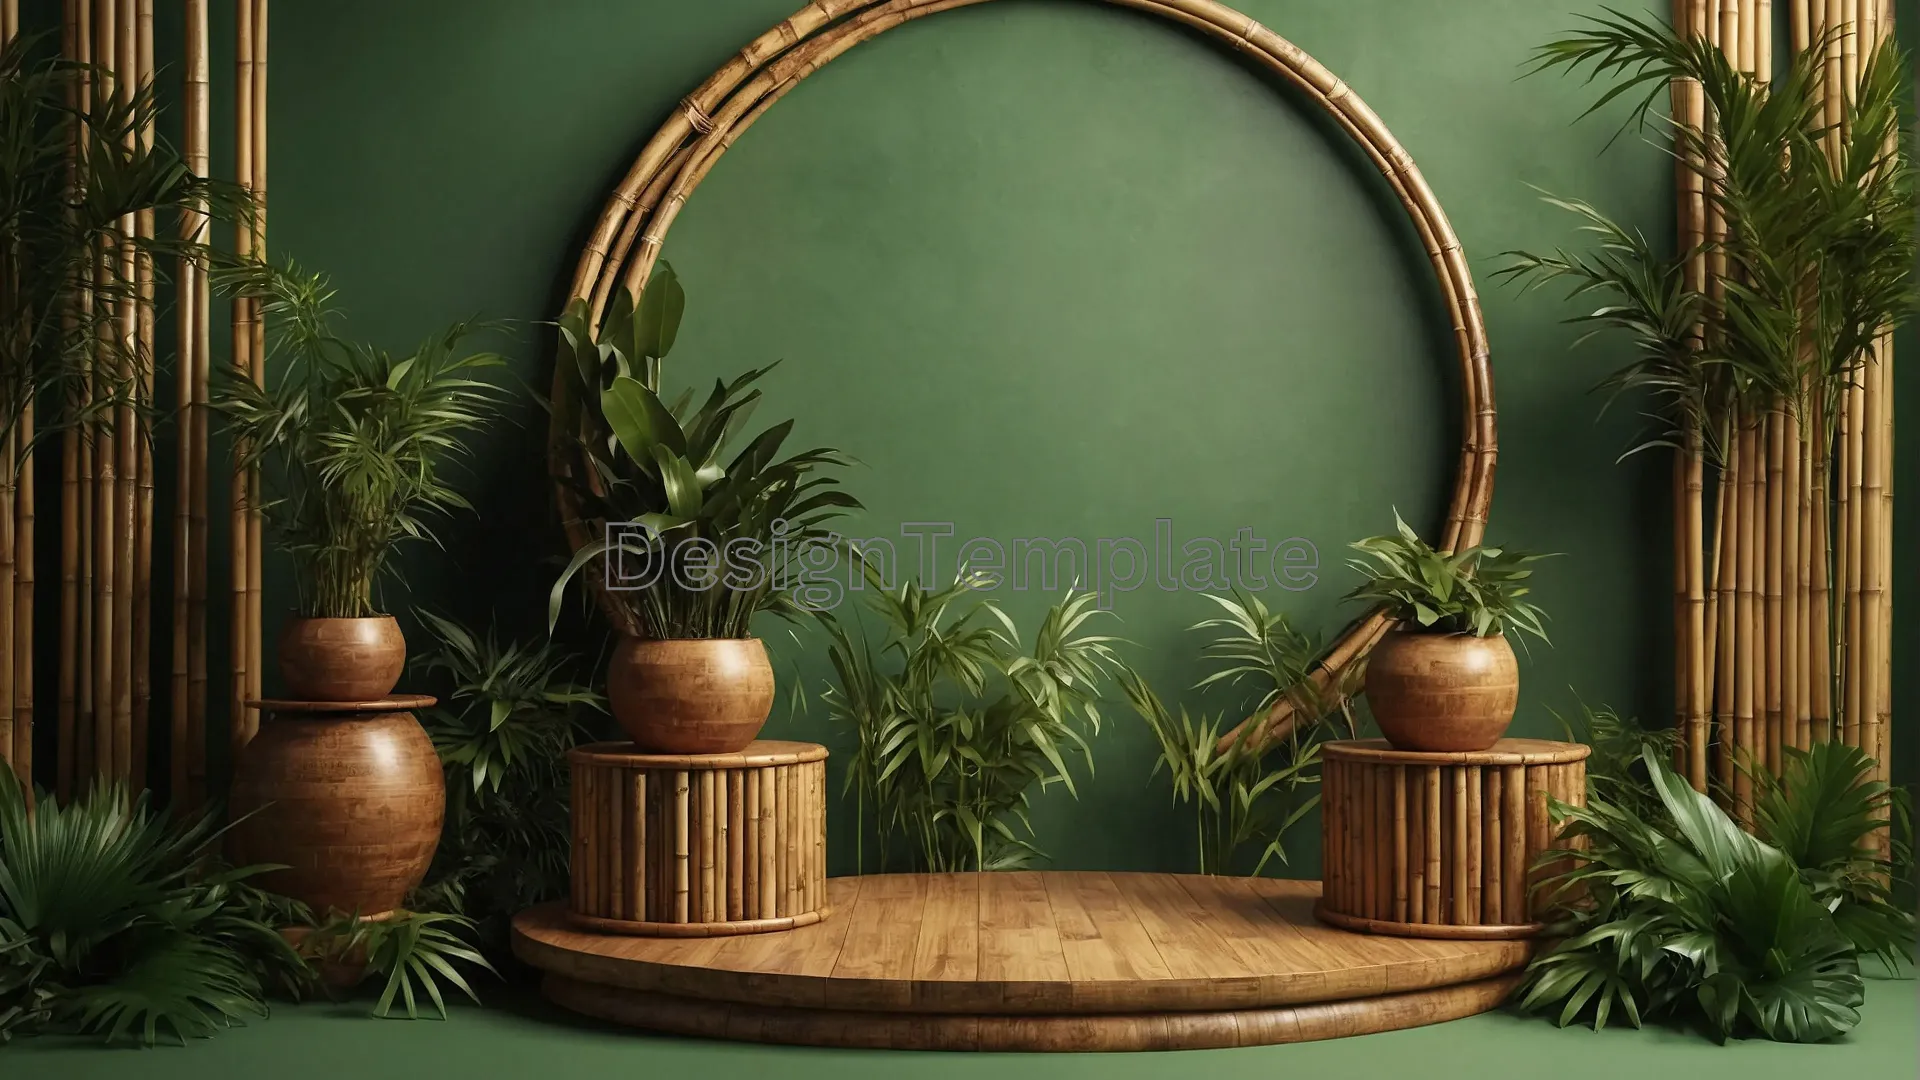 Serene Greenery Mirror View Peaceful Indoor Garden Background image